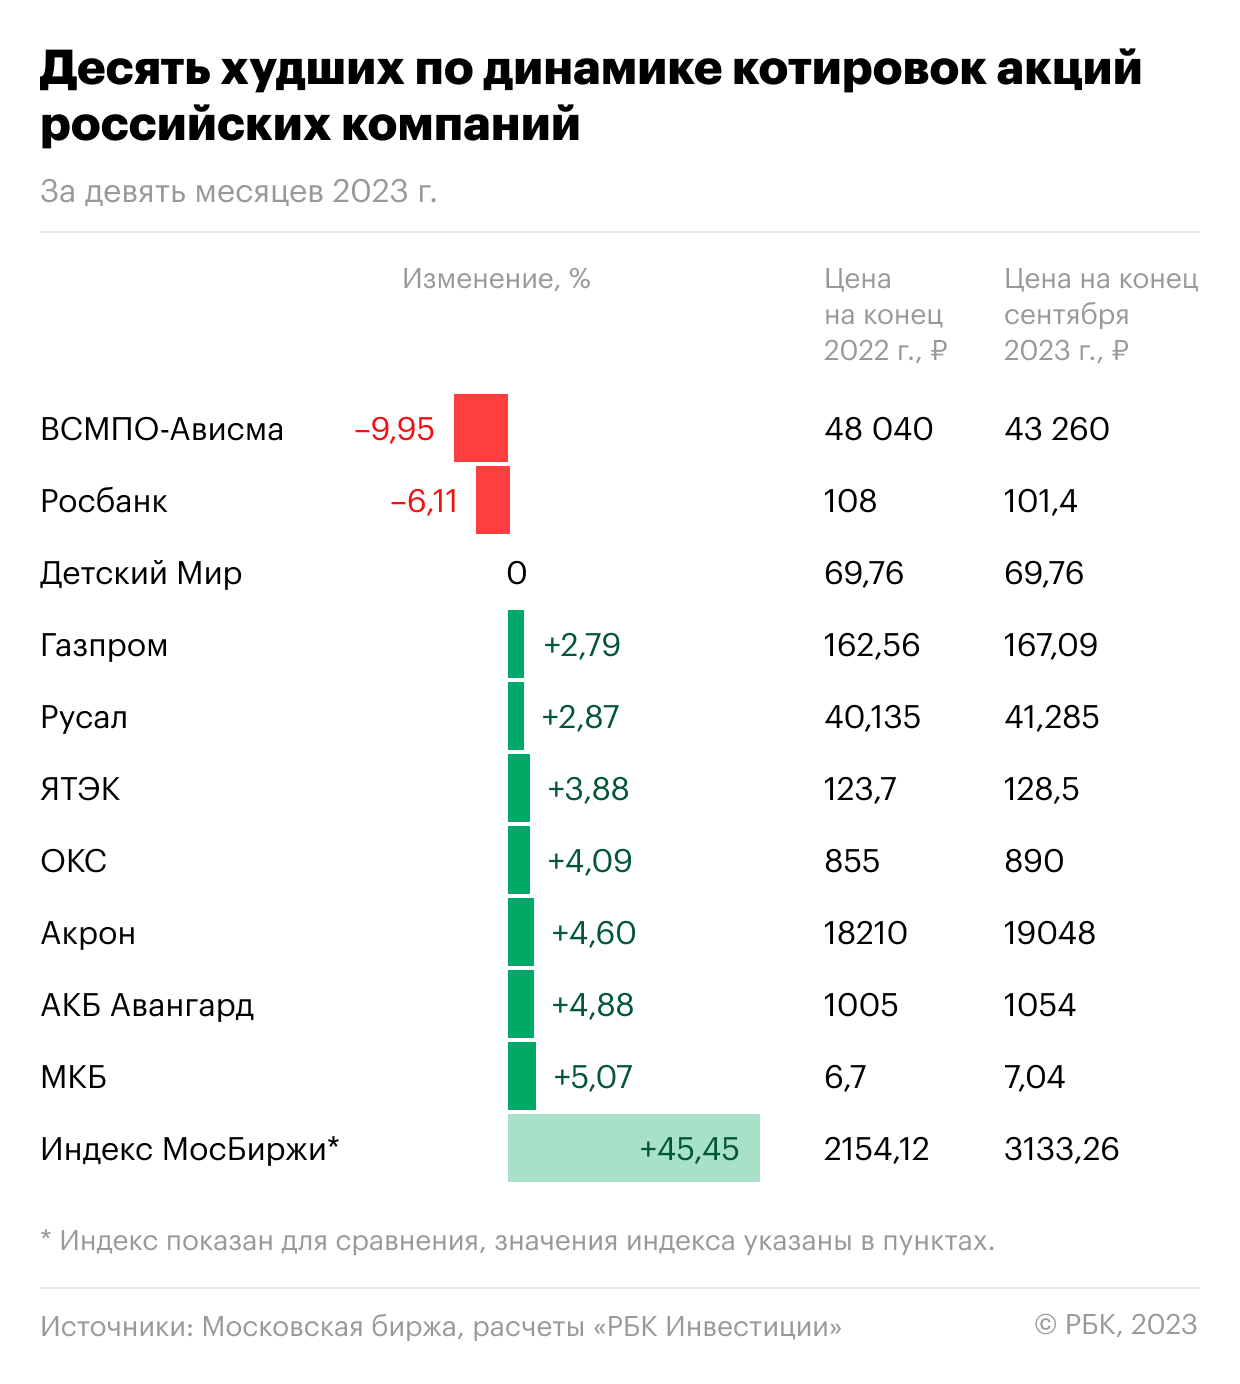 Худшие за девять месяцев 2023 года&nbsp;по динамике&nbsp;&nbsp;котировок акции российских компаний, торгующиеся на Московской бирже